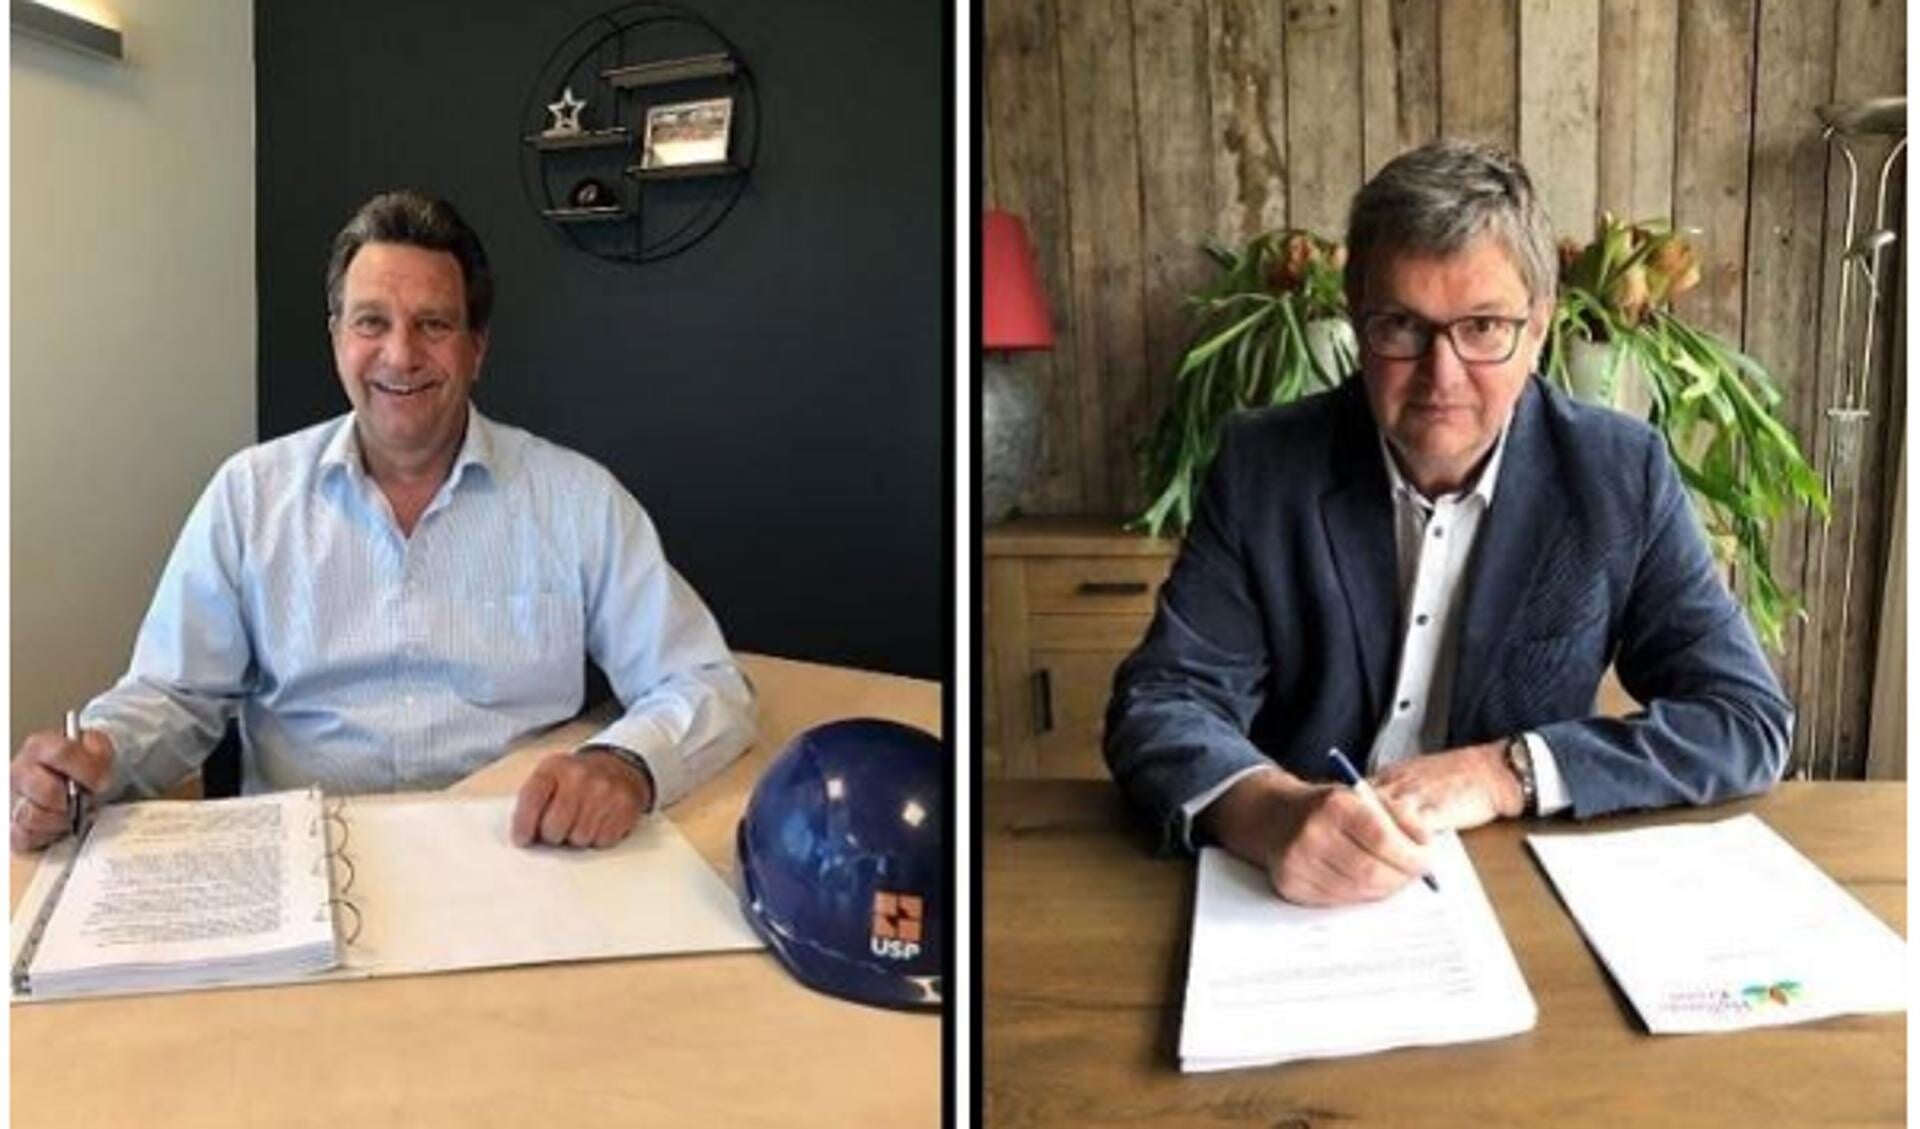 Frank Nannings, directeur van USP Vastgoed, en Theo Groot, wethouder van gemeente Hollands Kroon tekenen de contracten.